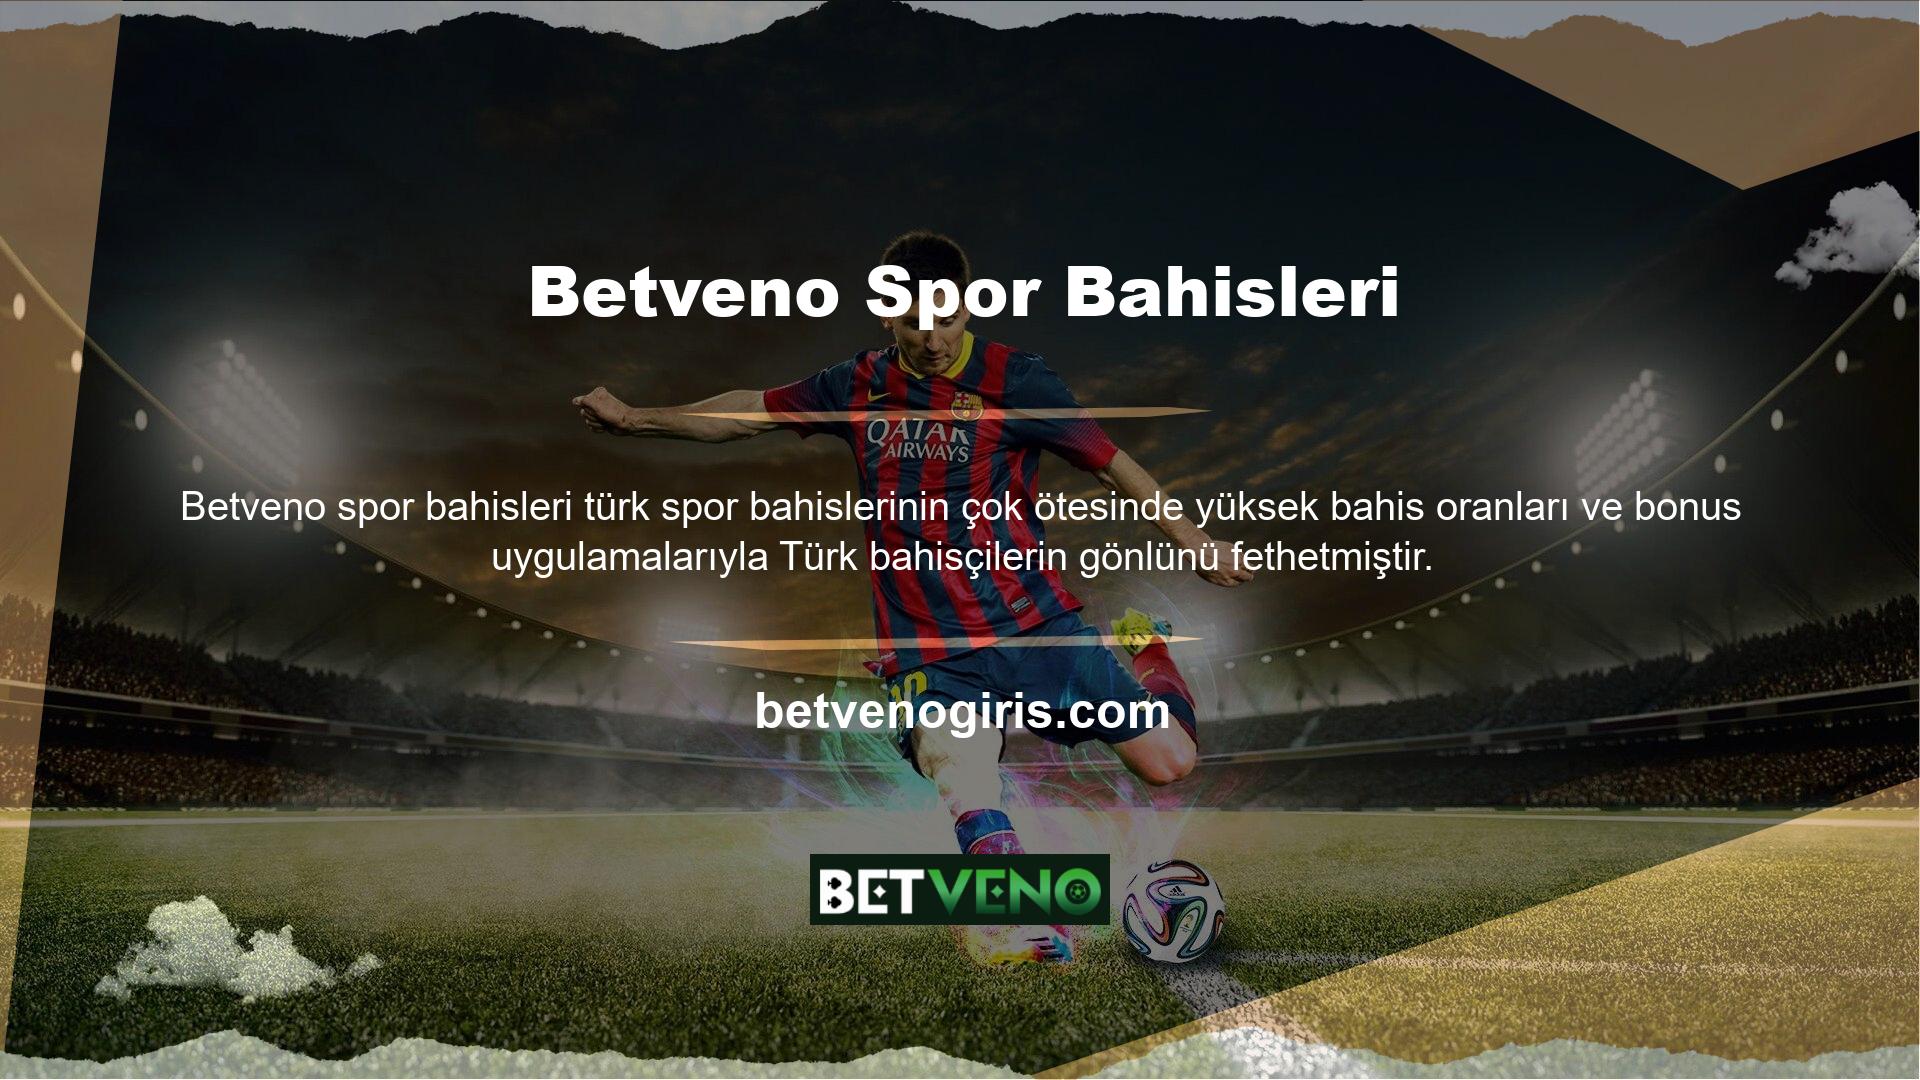 Betveno, Türk oyuncular arasında çok popüler ve beğeniliyor ve casino sektöründe çok güçlü bir konuma sahip